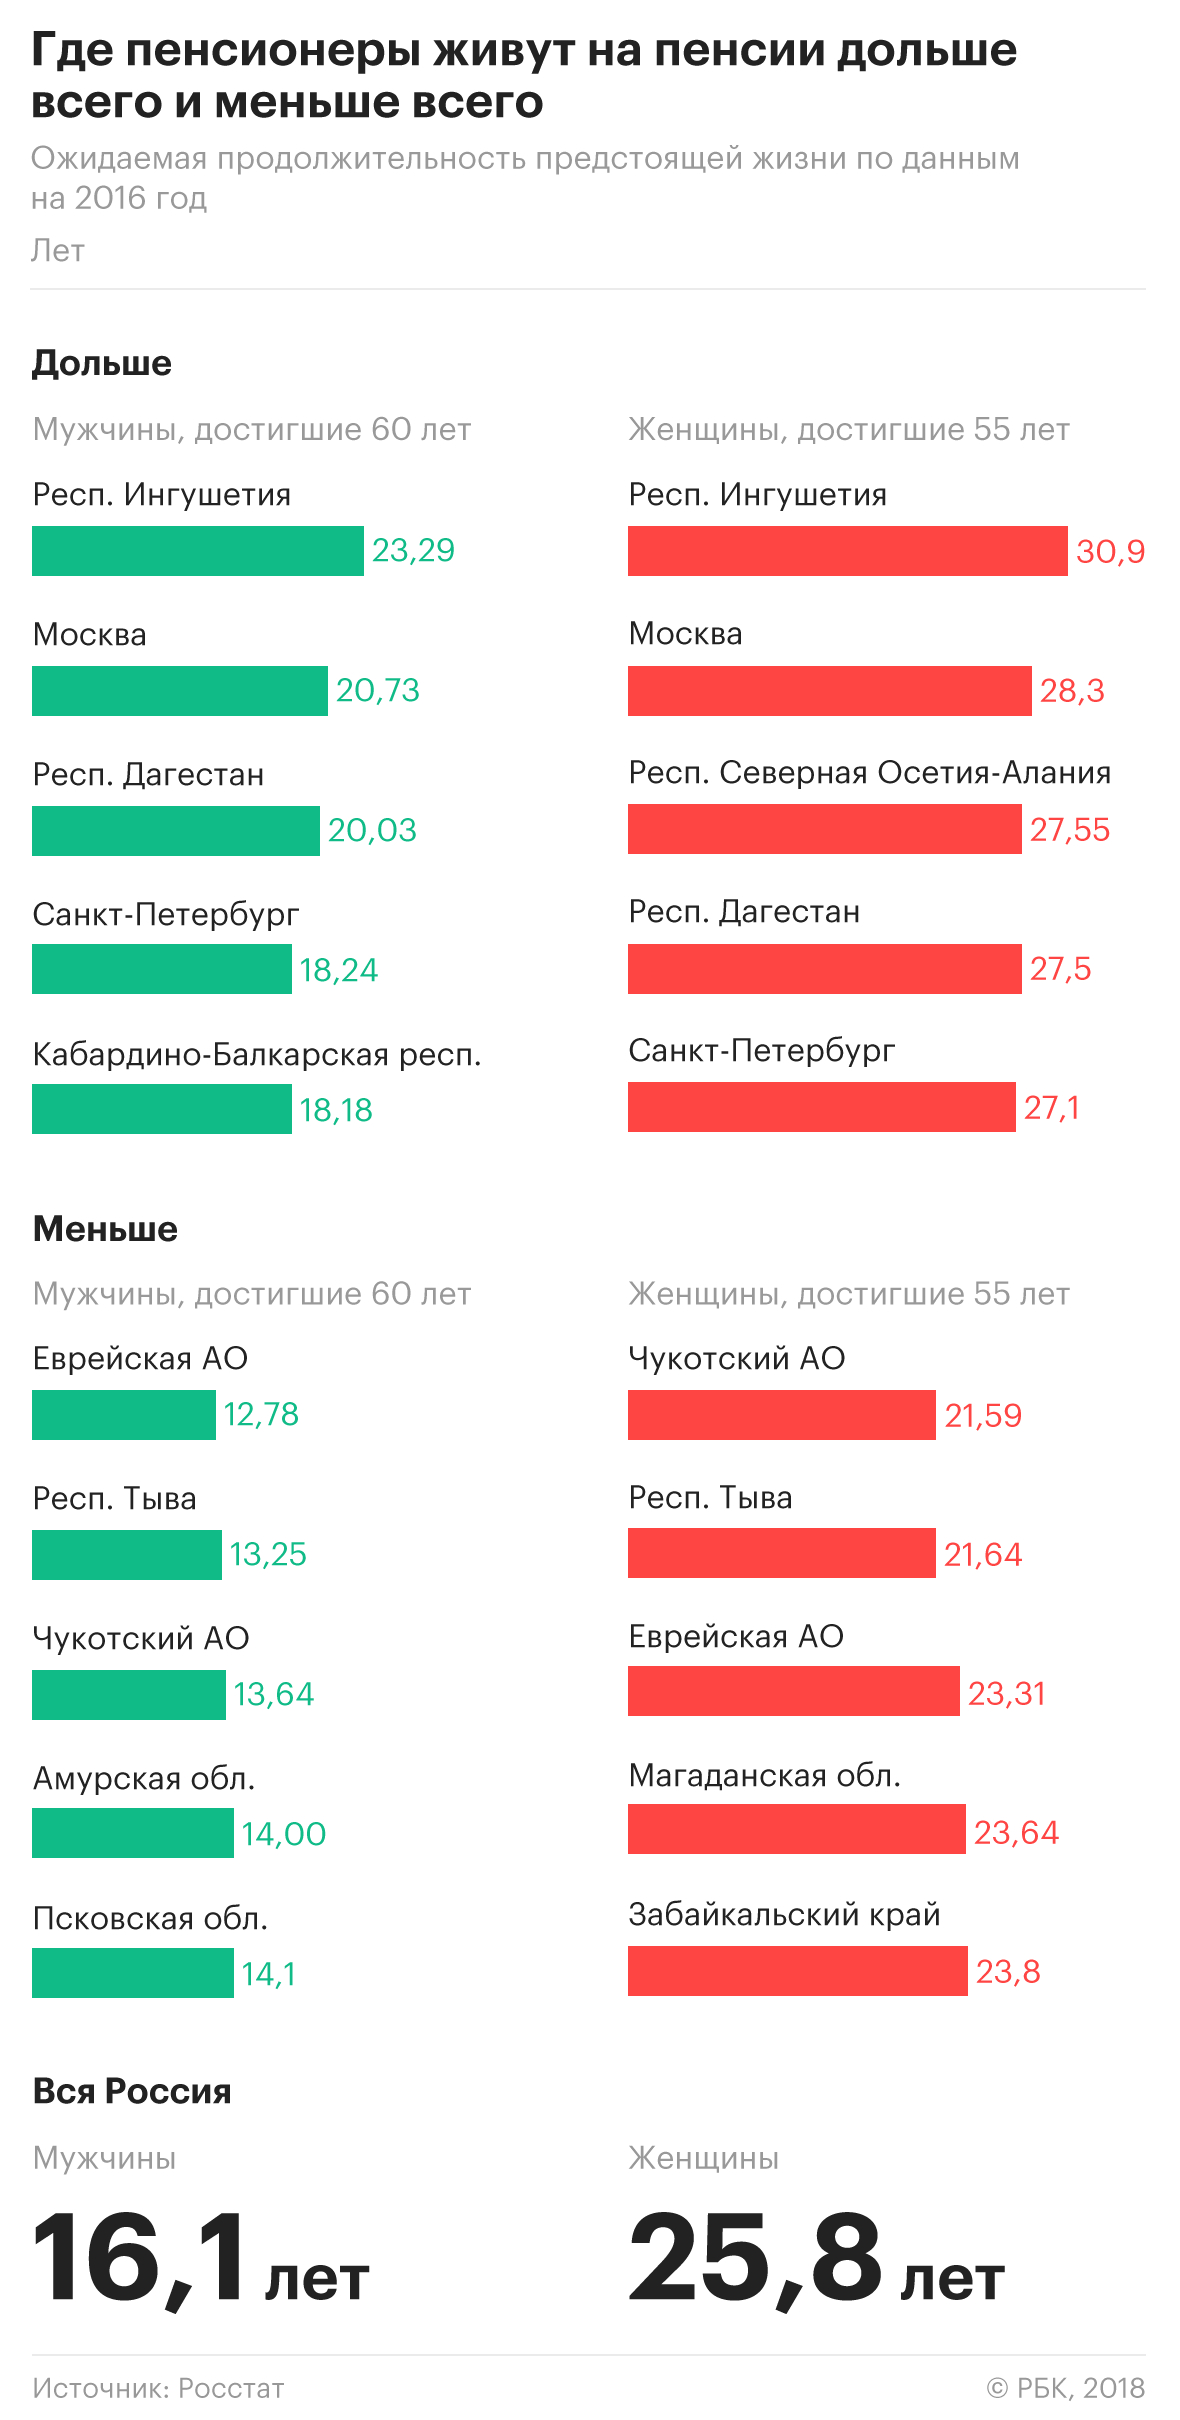 Самое большое неравенство полов по сроку жизни зафиксировали в России